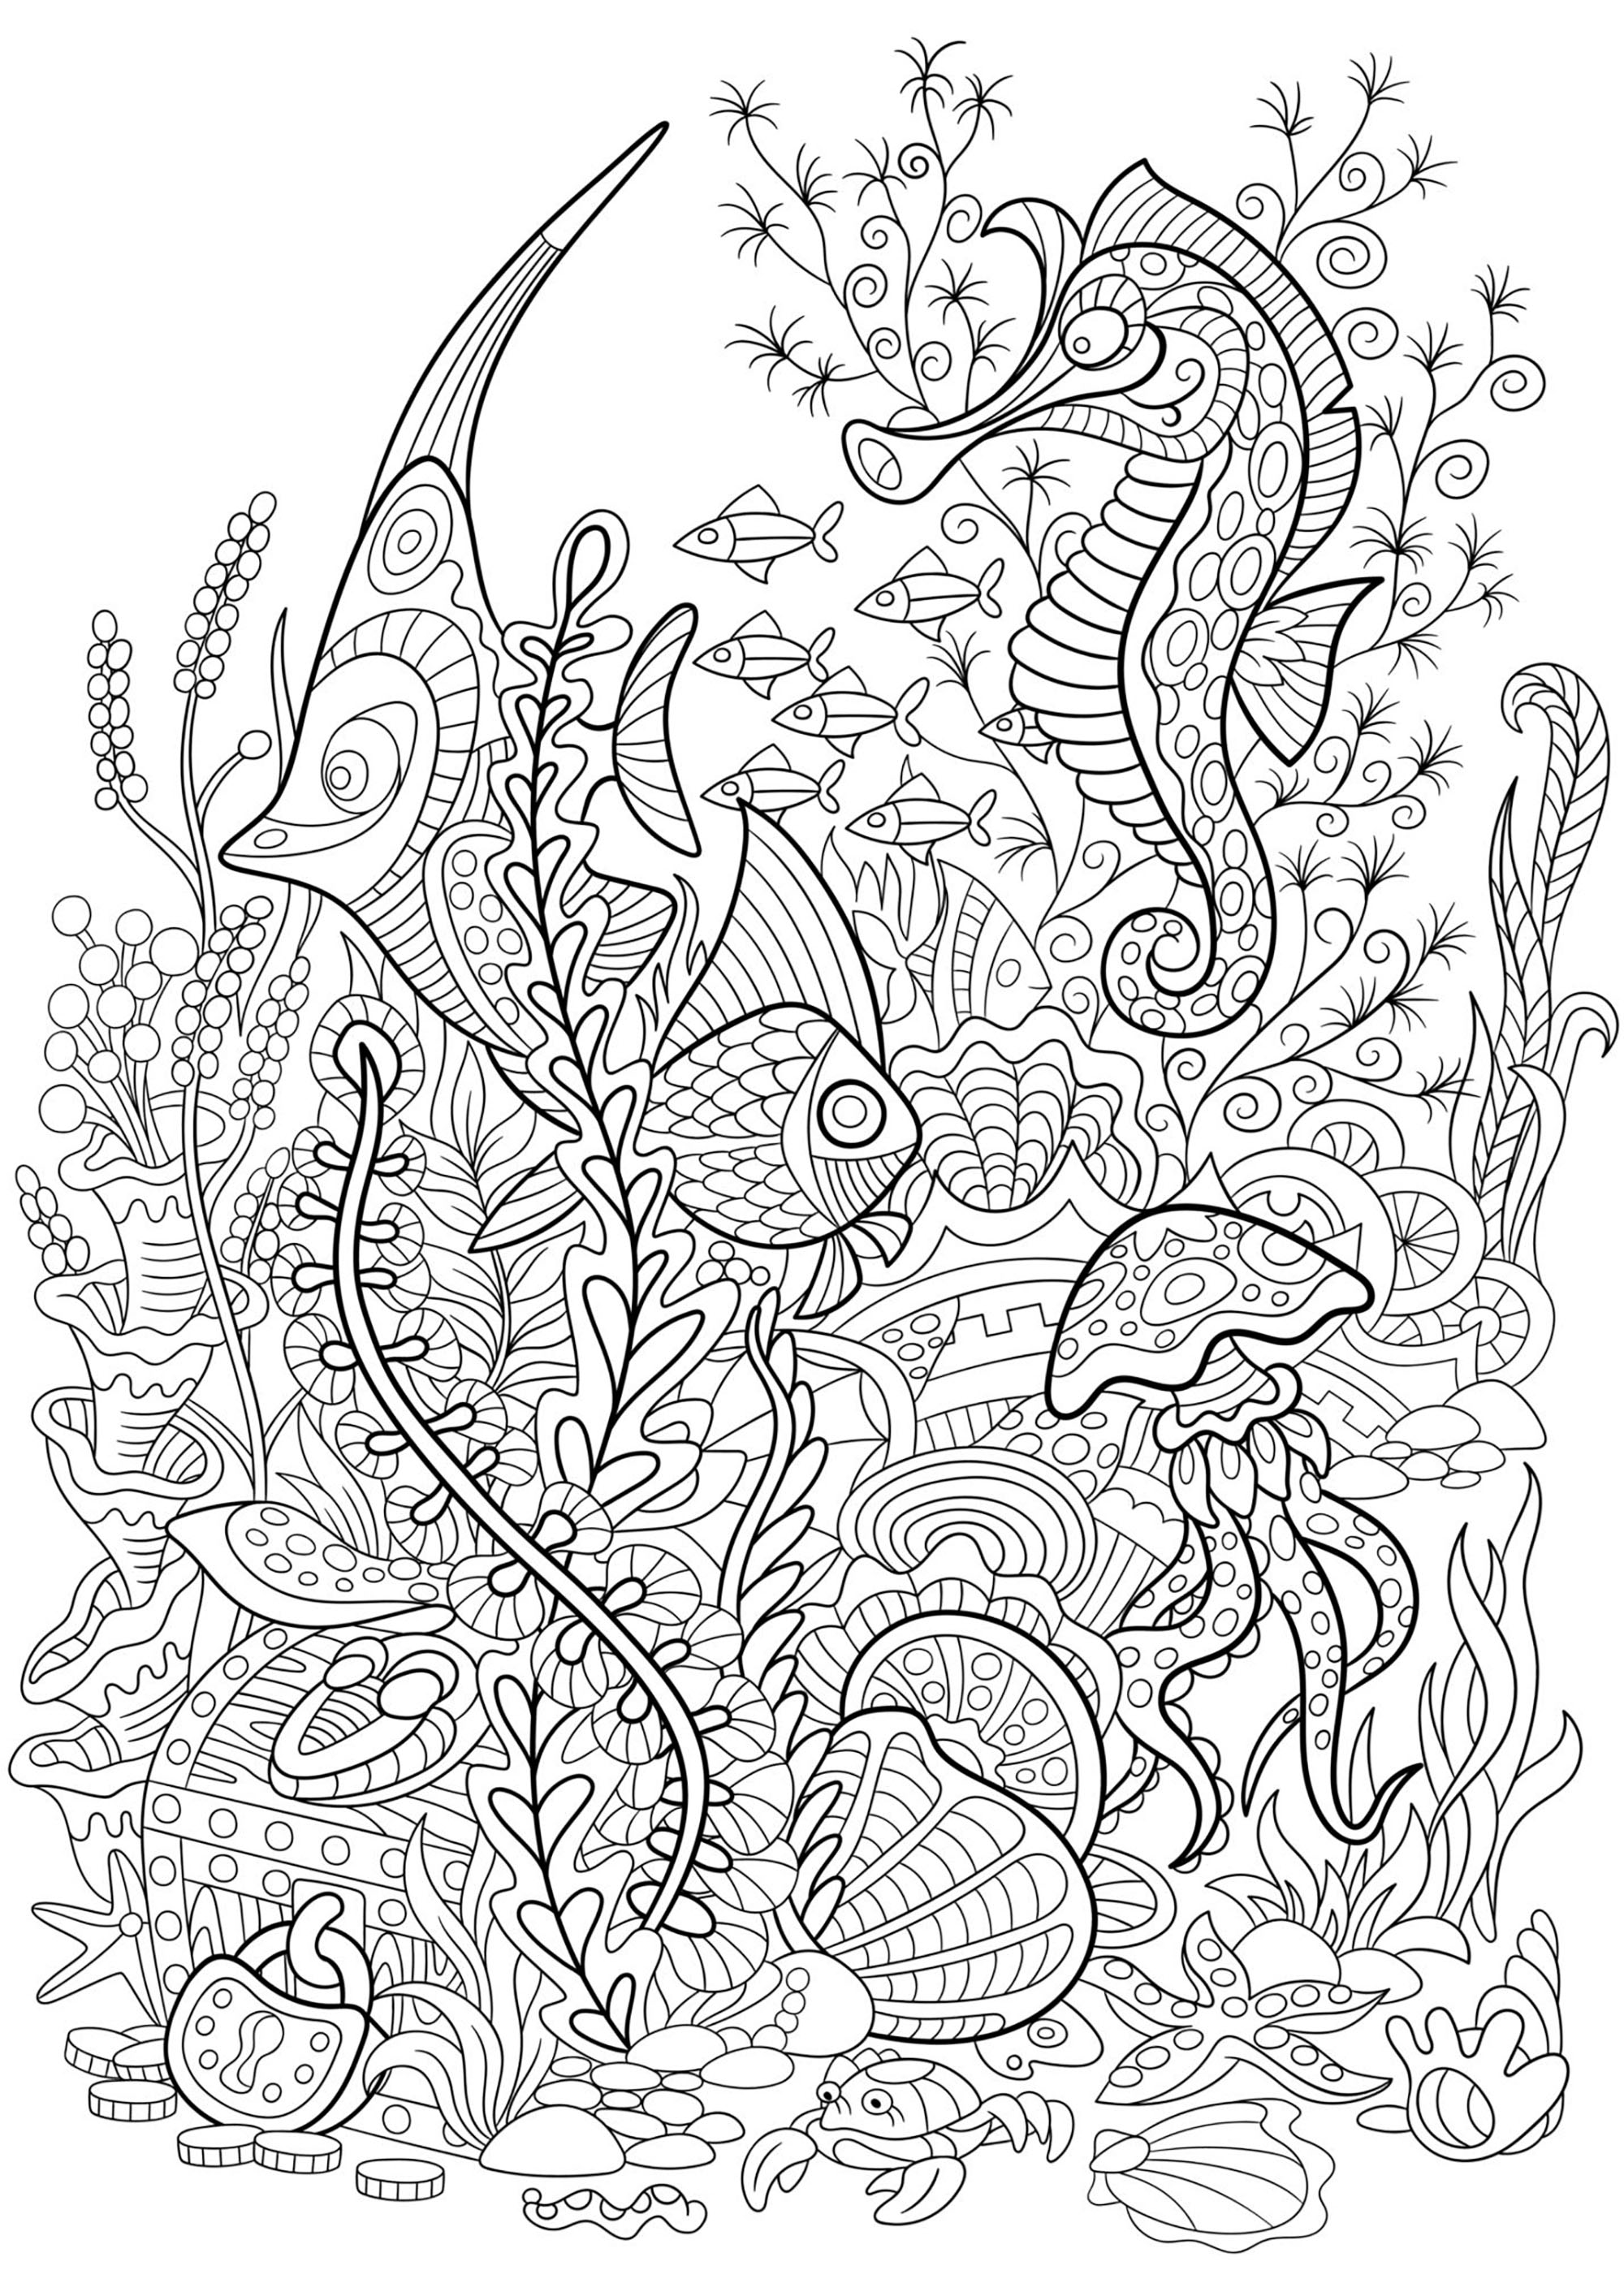 Seaworld con peces, caballitos de mar, medusas y plantas acuáticas, Artista : Sybirko